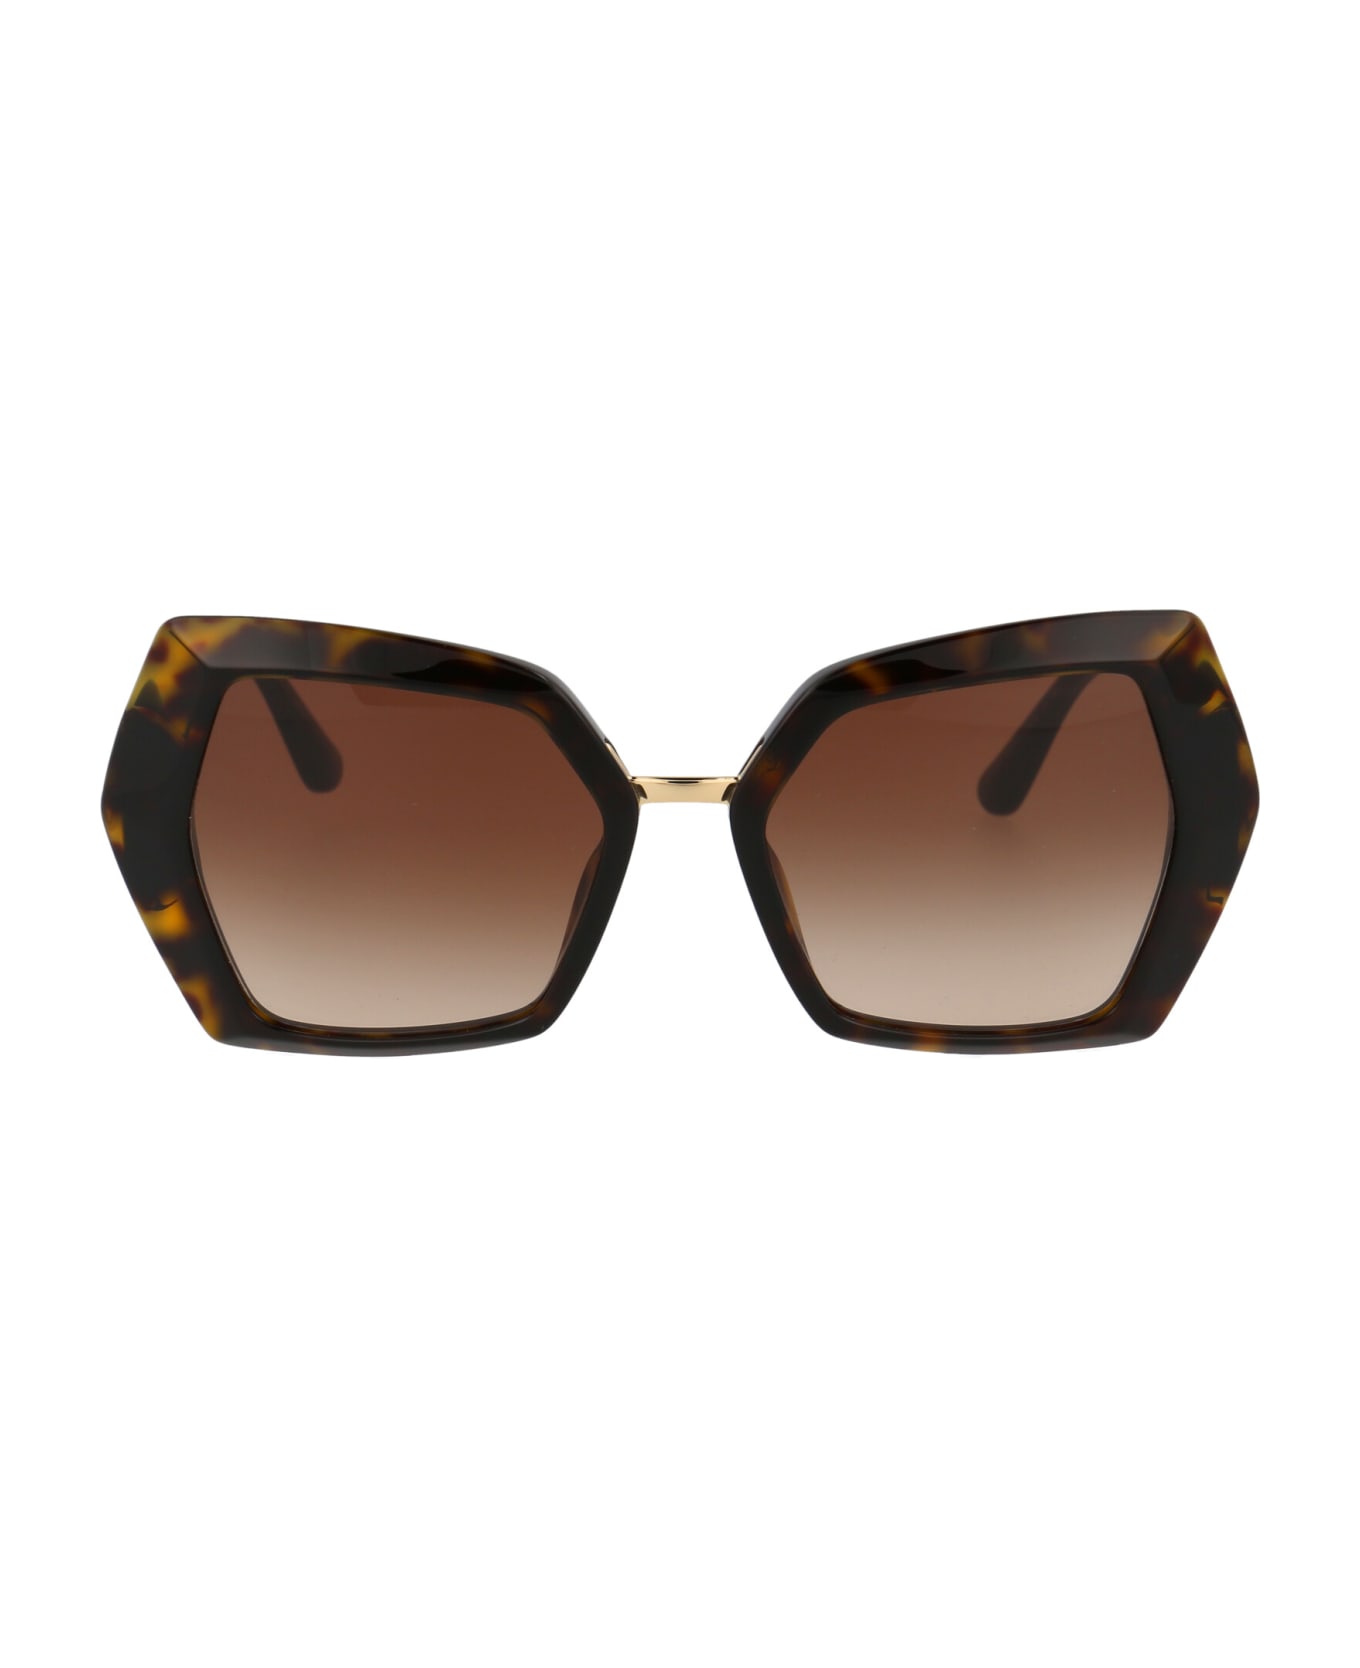 Dolce & Gabbana Eyewear 0dg4377 Sunglasses - 502/13 HAVANA